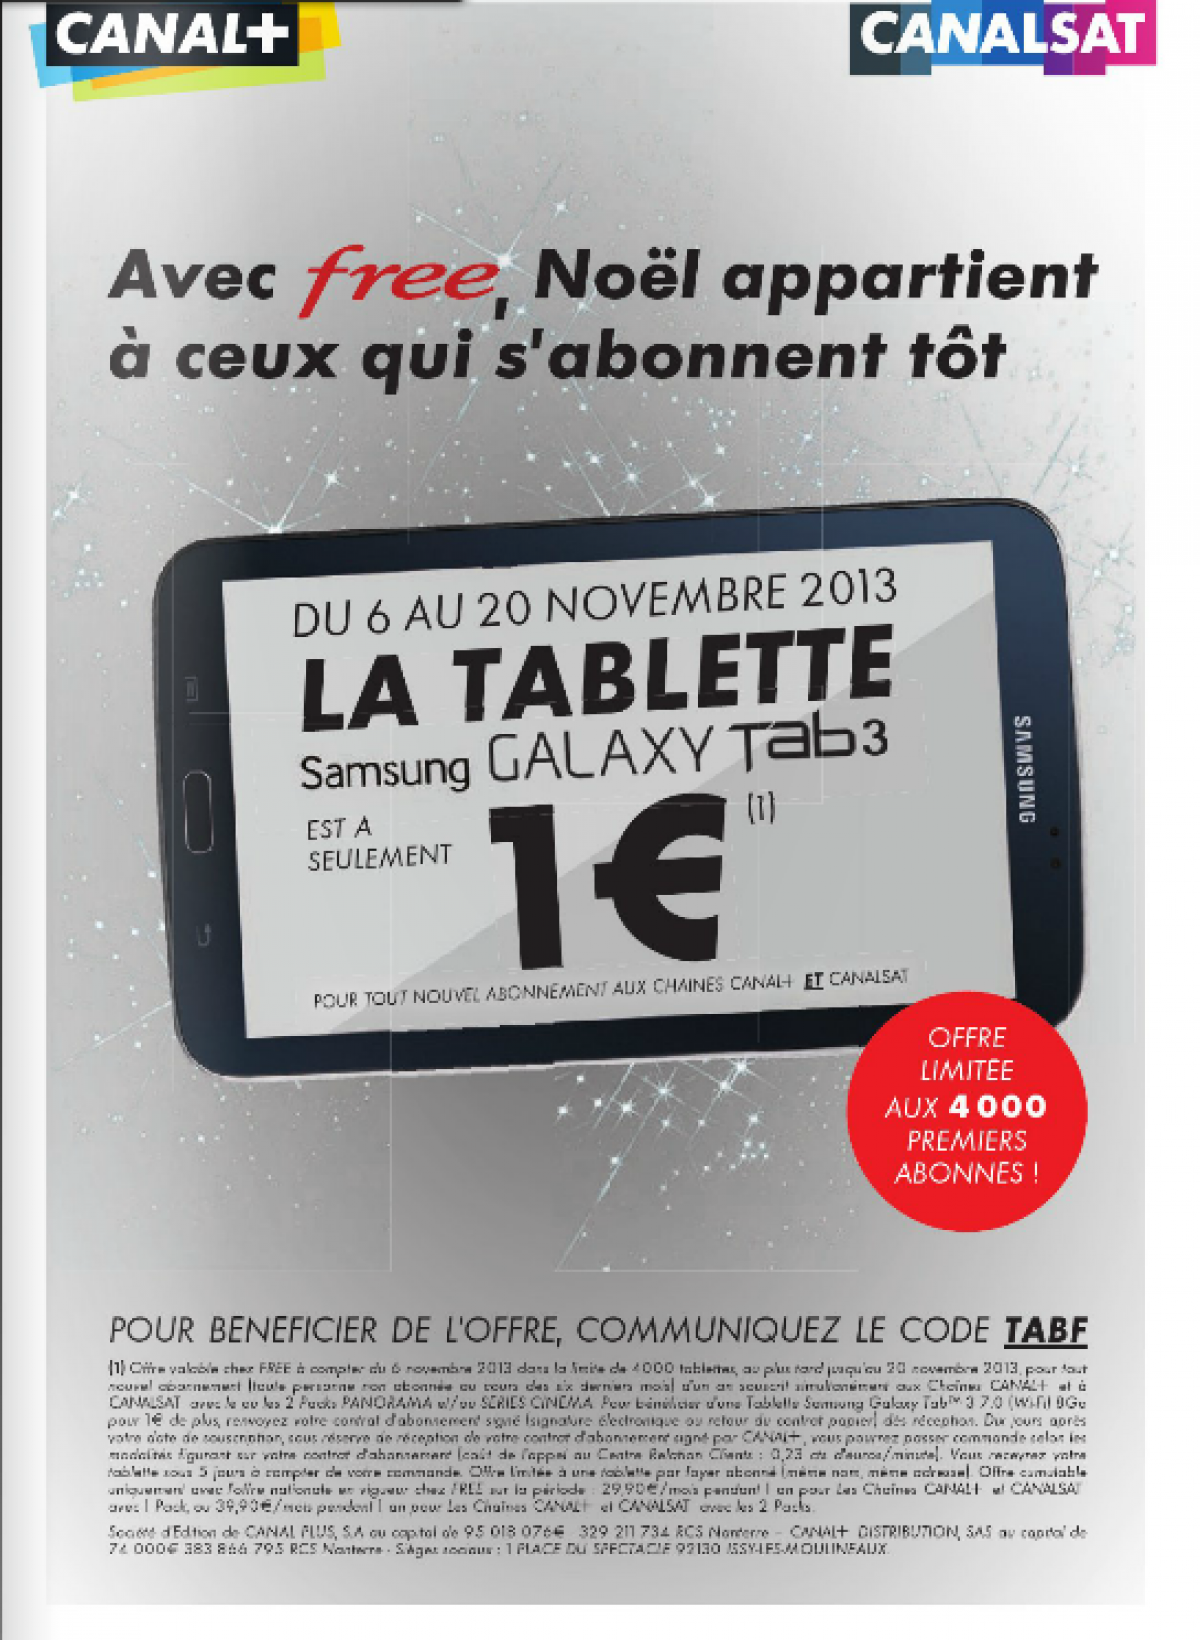 Une tablette à 1 € pour tout abonnement Canal+/Canal Sat sur la Freebox entre le 06 et 20 novembre